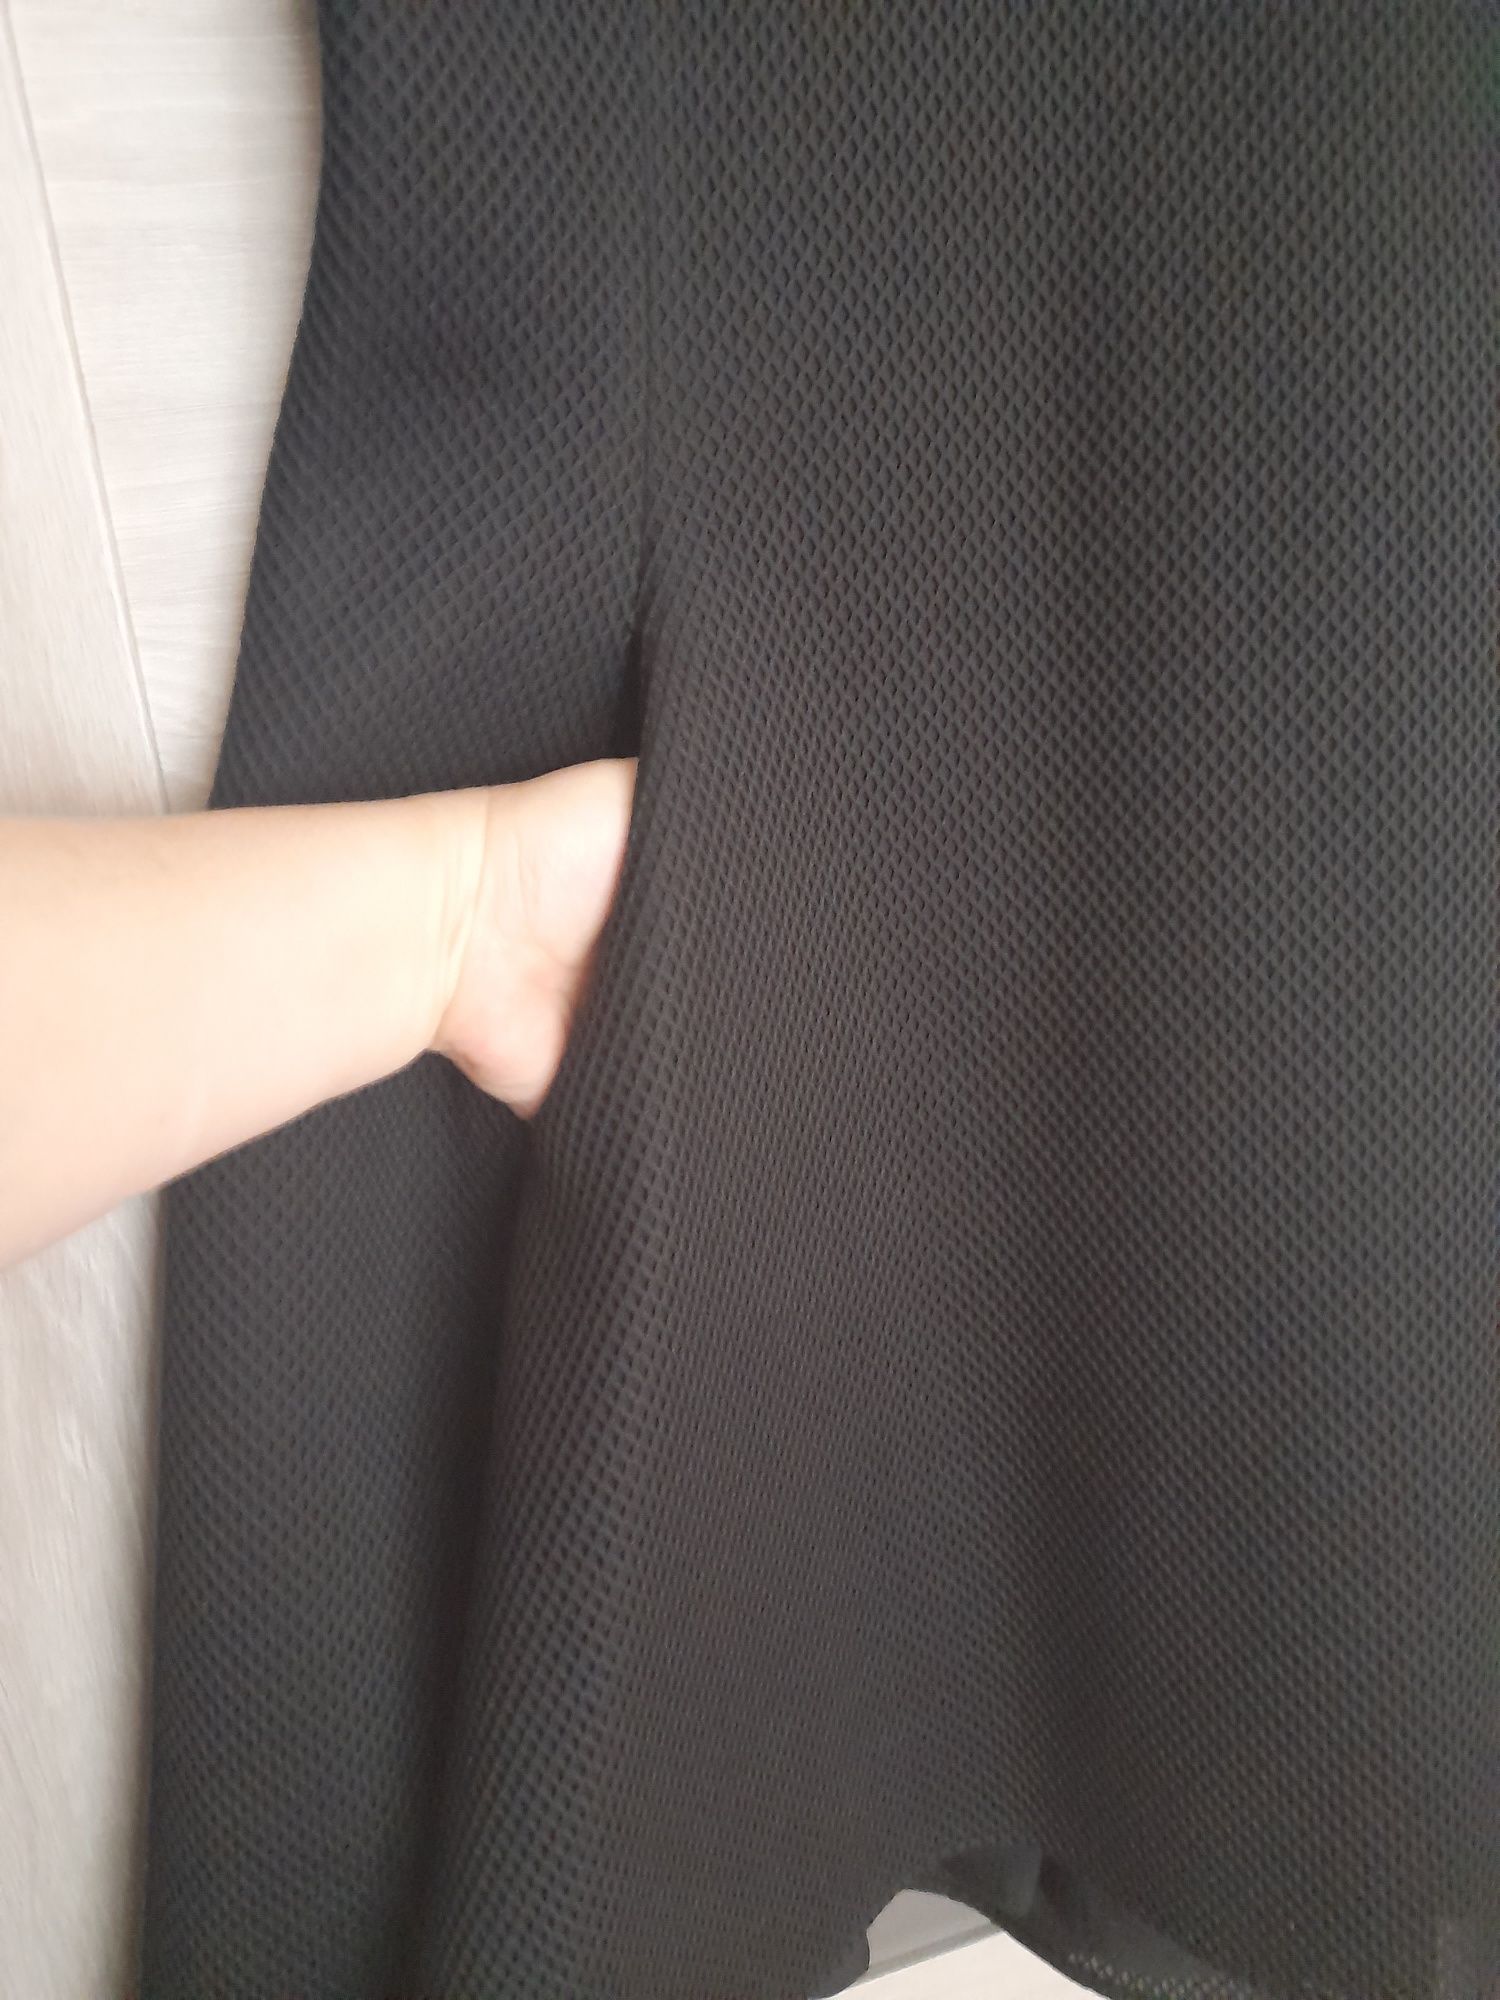 Czarna sukienka Donna Karan New York, bardzo wygodna, rozmiar 16